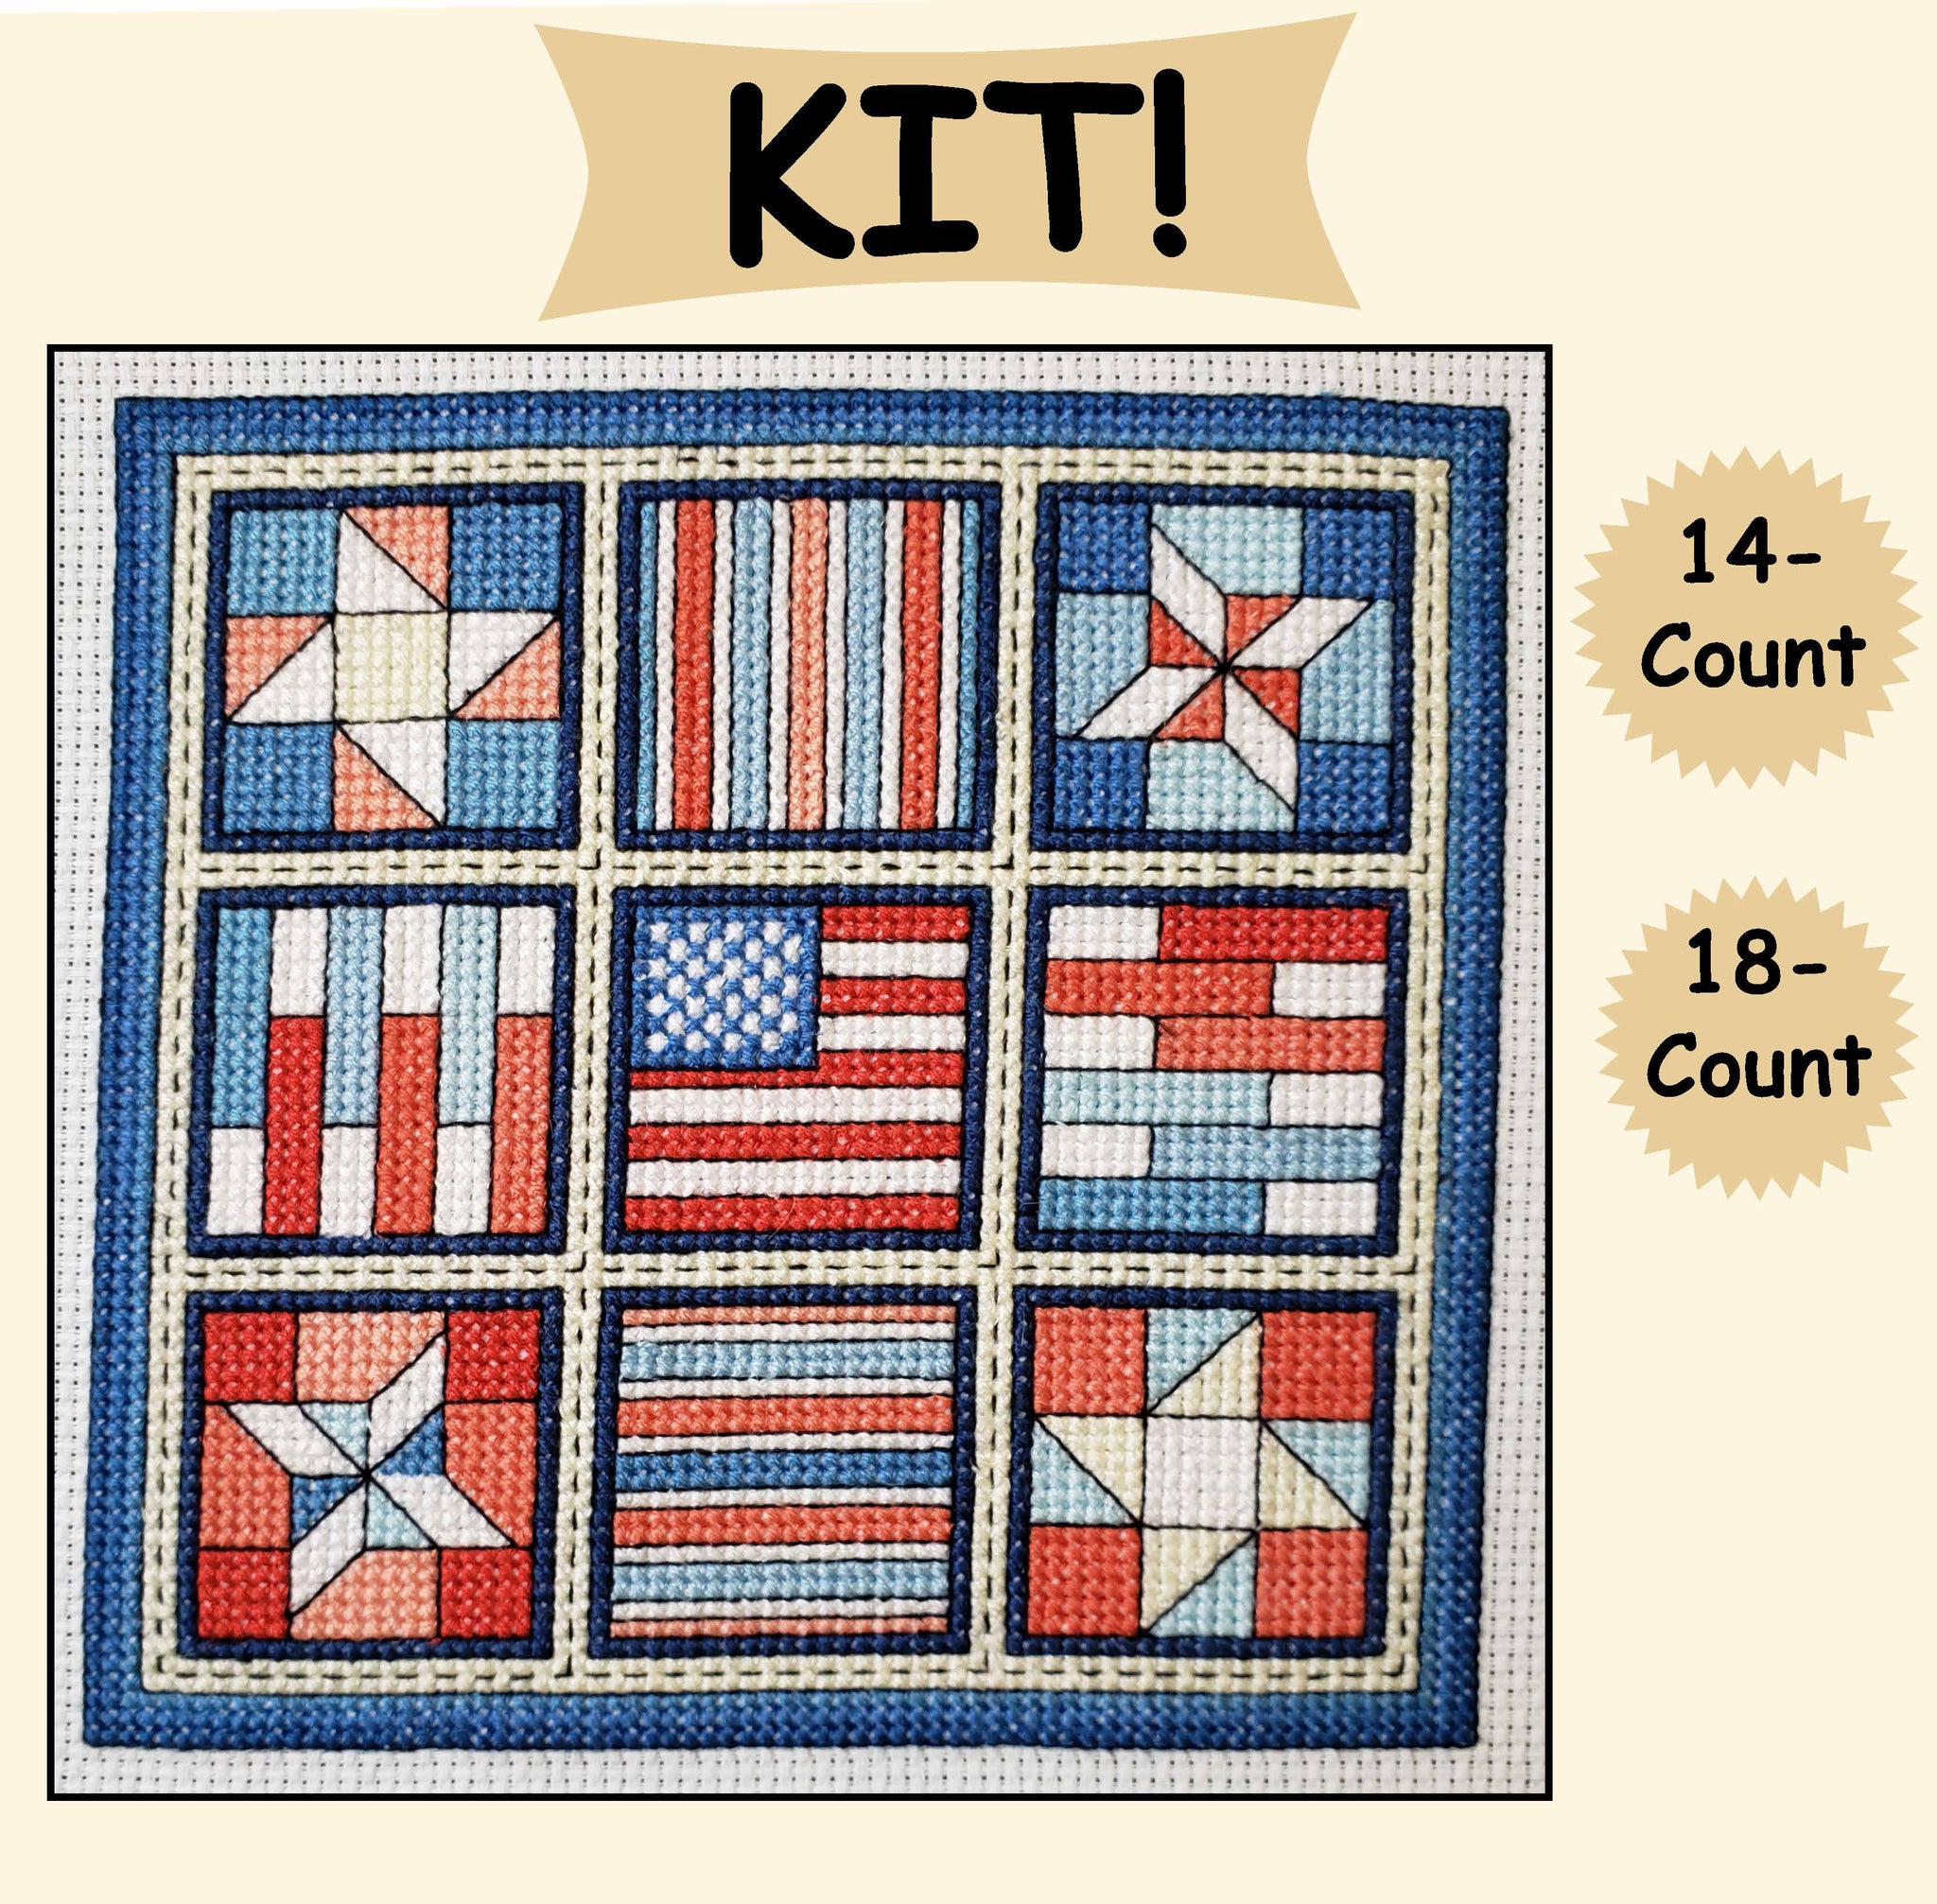 Stars and Stripes / Quilt Blocks 7 - Cross Stitch Kit